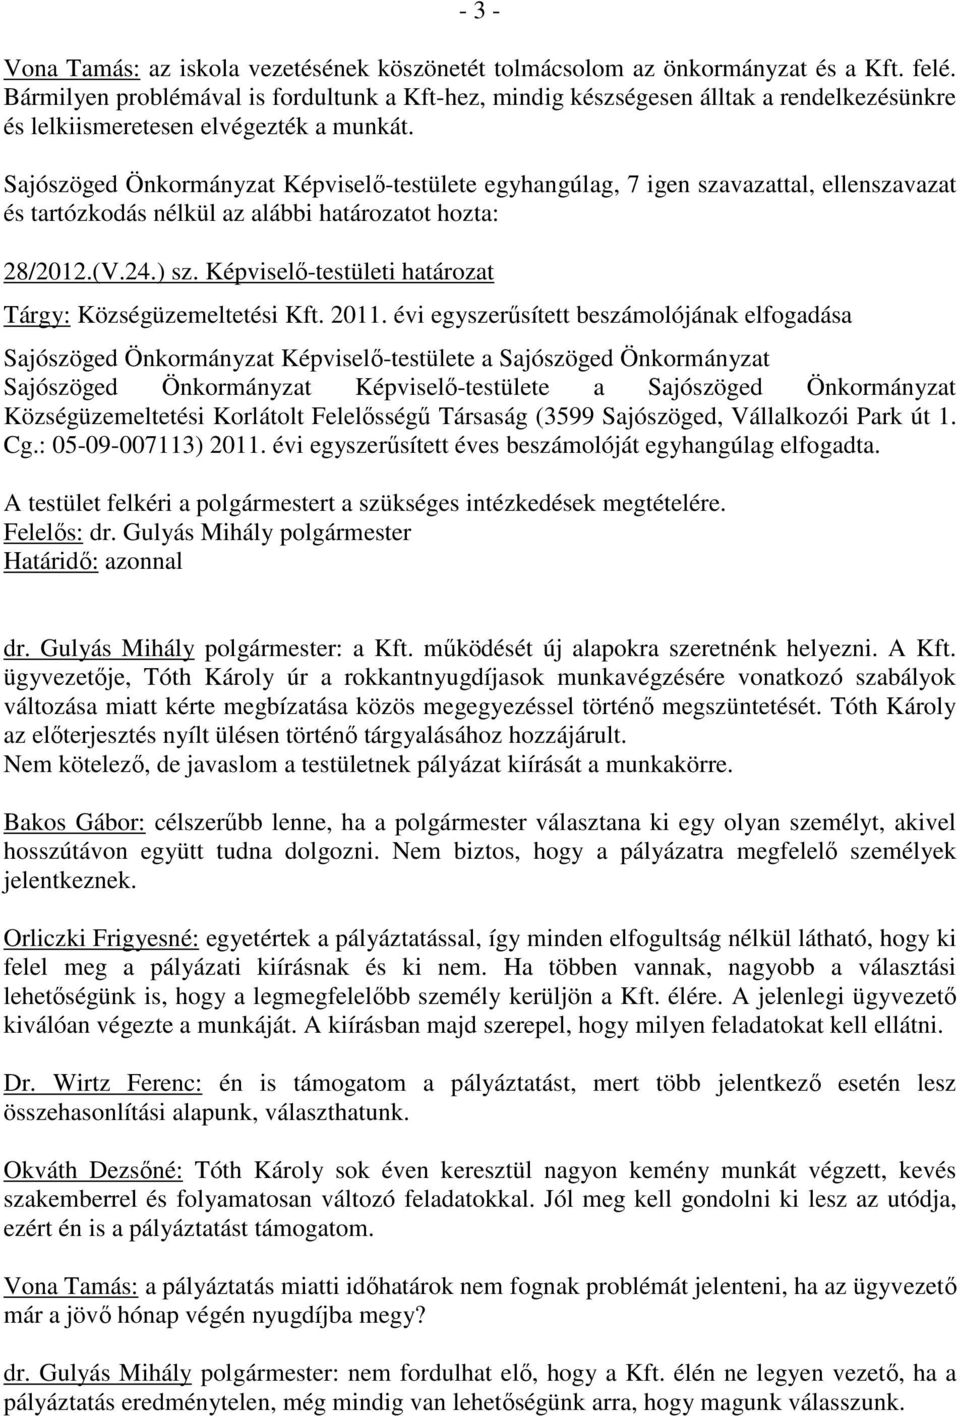 Sajószöged Önkormányzat Képviselı-testülete egyhangúlag, 7 igen szavazattal, ellenszavazat és tartózkodás nélkül az alábbi határozatot hozta: 28/2012.(V.24.) sz.